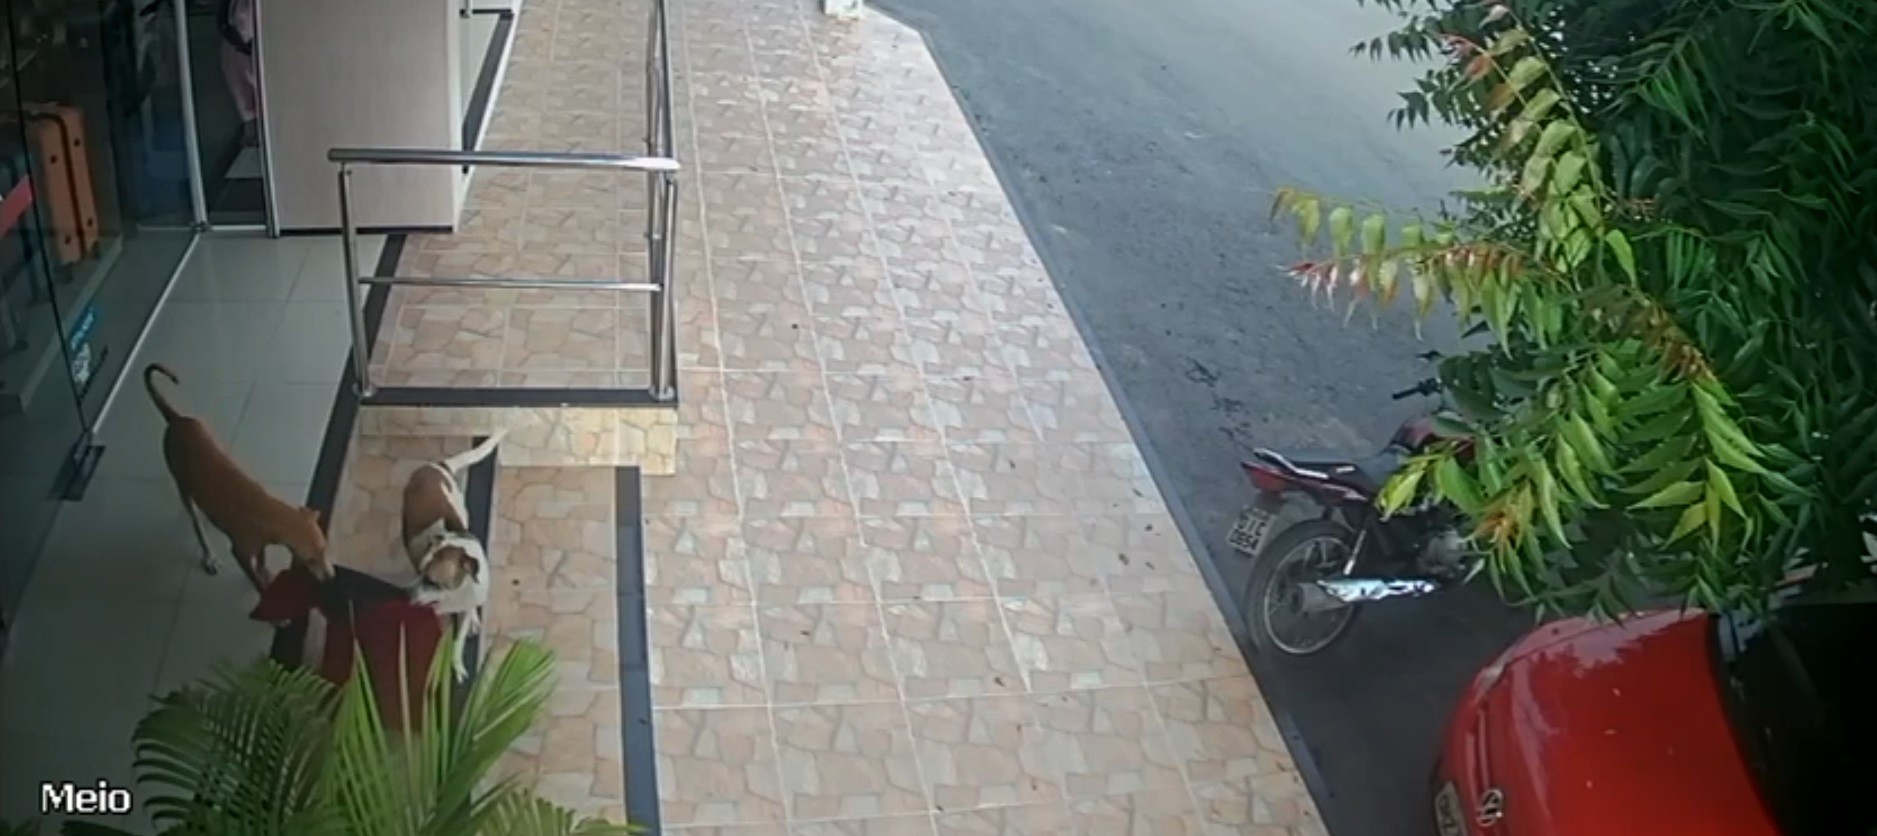 Vira-latas 'furtam' tapete de loja de roupas e são flagrados por câmeras de segurança, no Ceará; vídeo